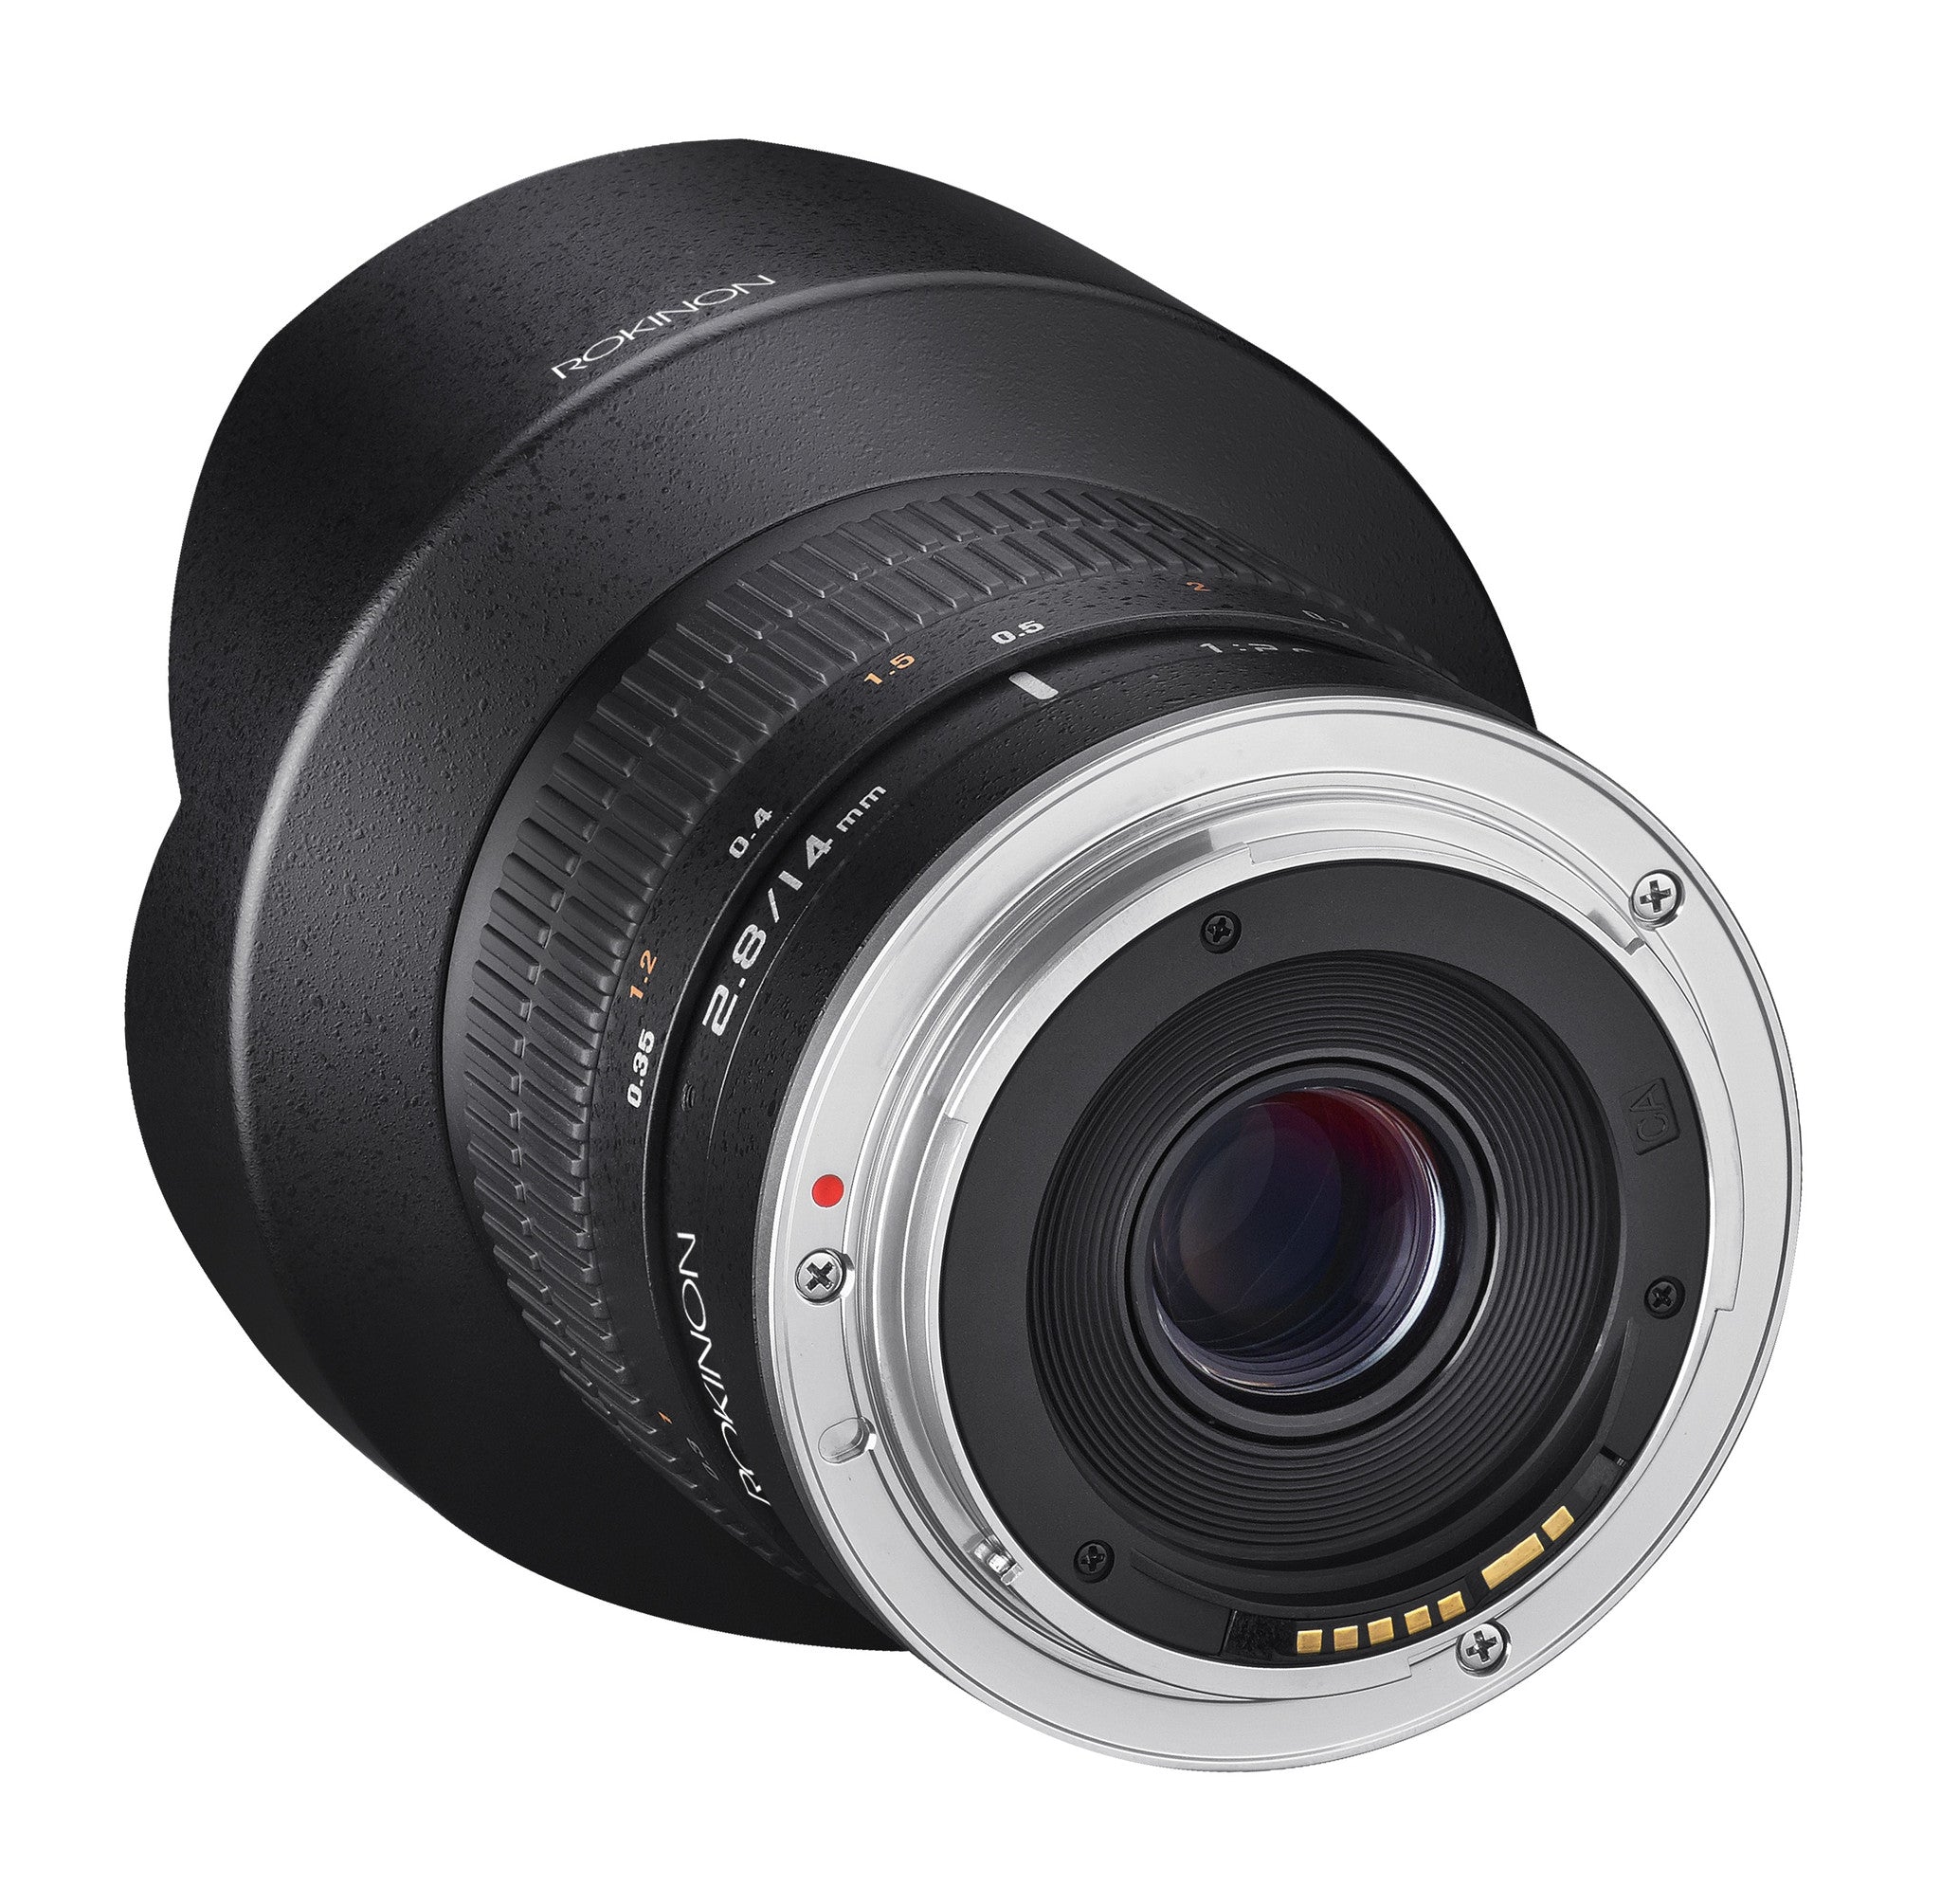 Rokinon 14mm Ultra Wide Angle f2/8 IF ED UMC Lens for Canon, lenses slr lenses, Rokinon - Pictureline  - 3